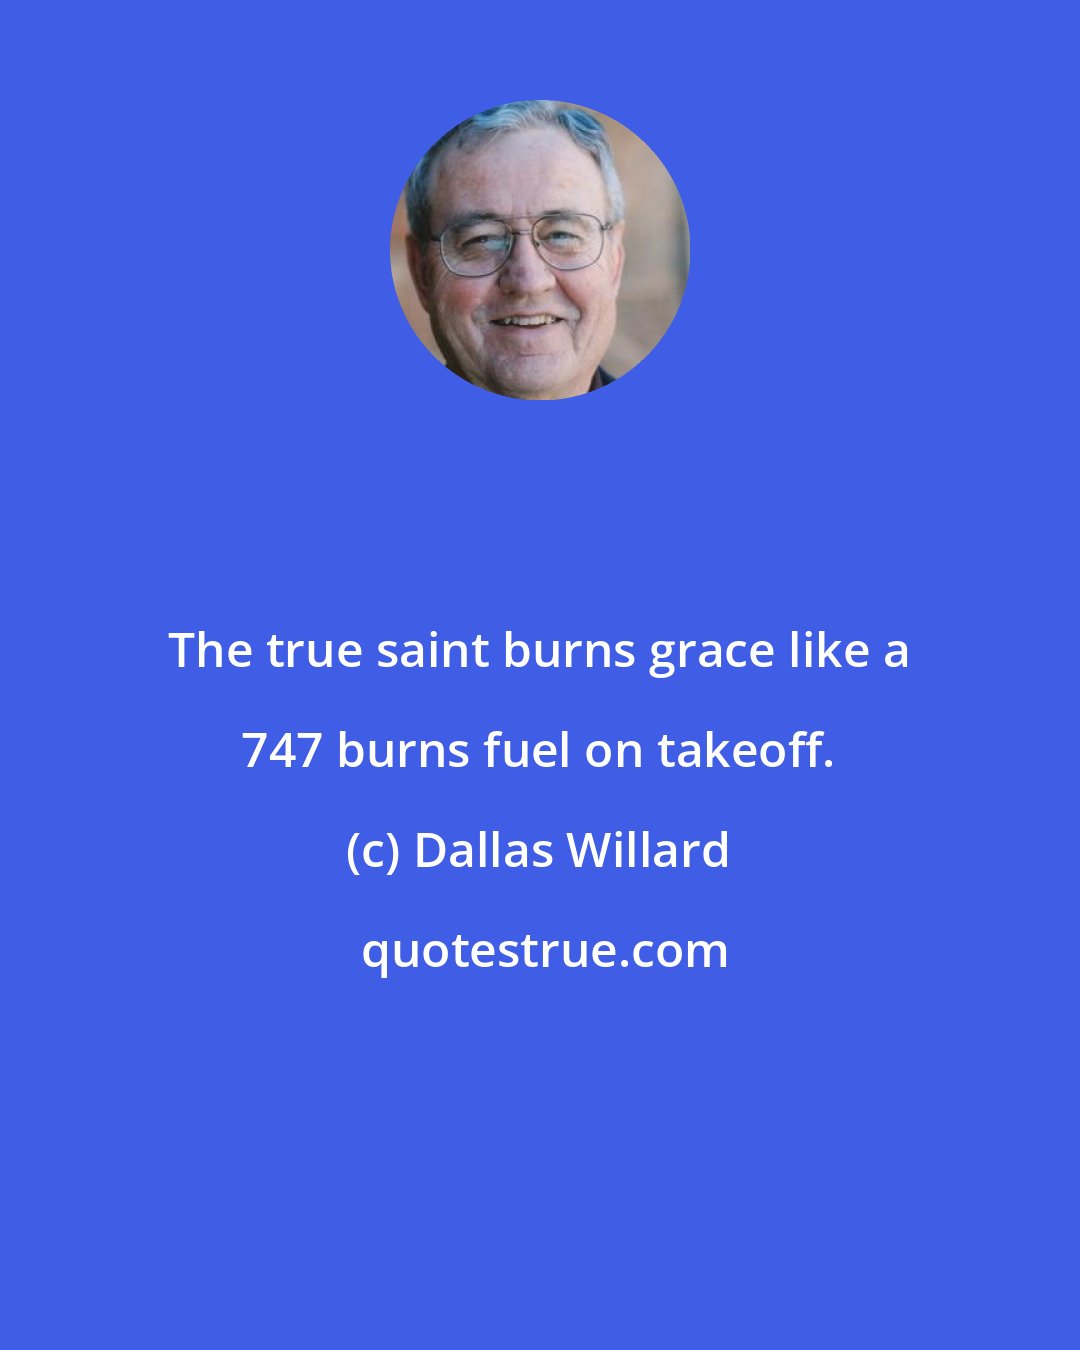 Dallas Willard: The true saint burns grace like a 747 burns fuel on takeoff.